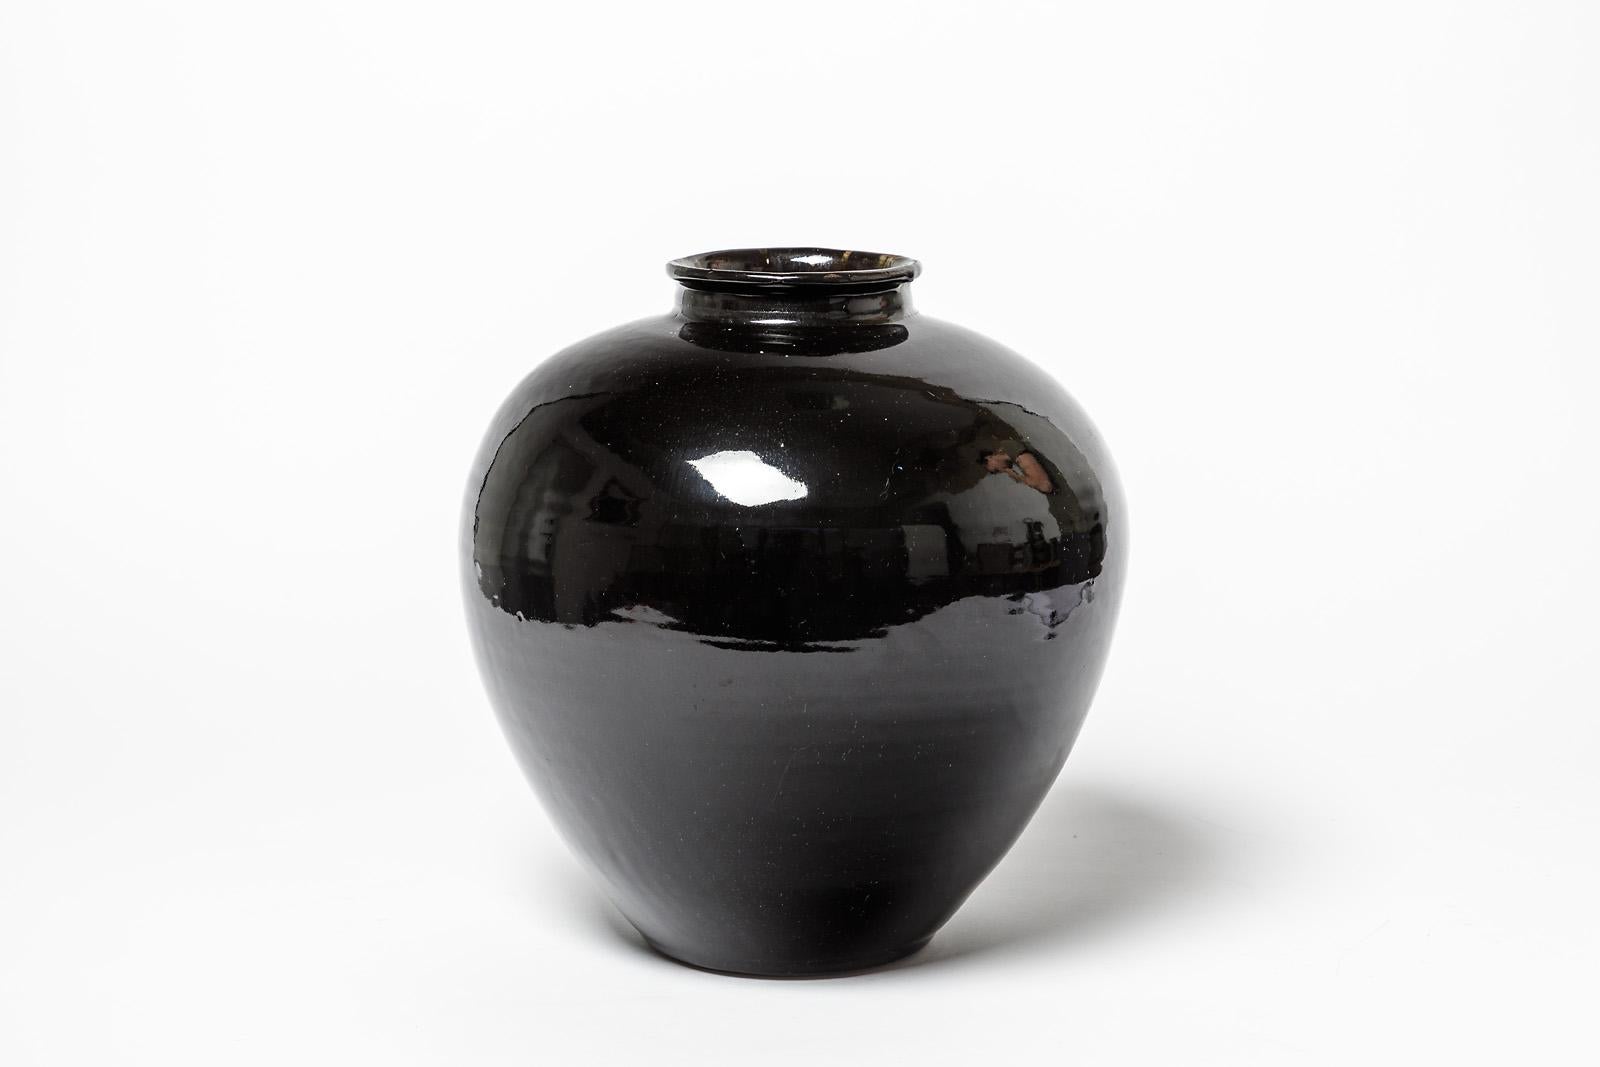 Un vase en céramique de Claude Champy.
Conditions d'origine parfaites.
Signé sous la base 